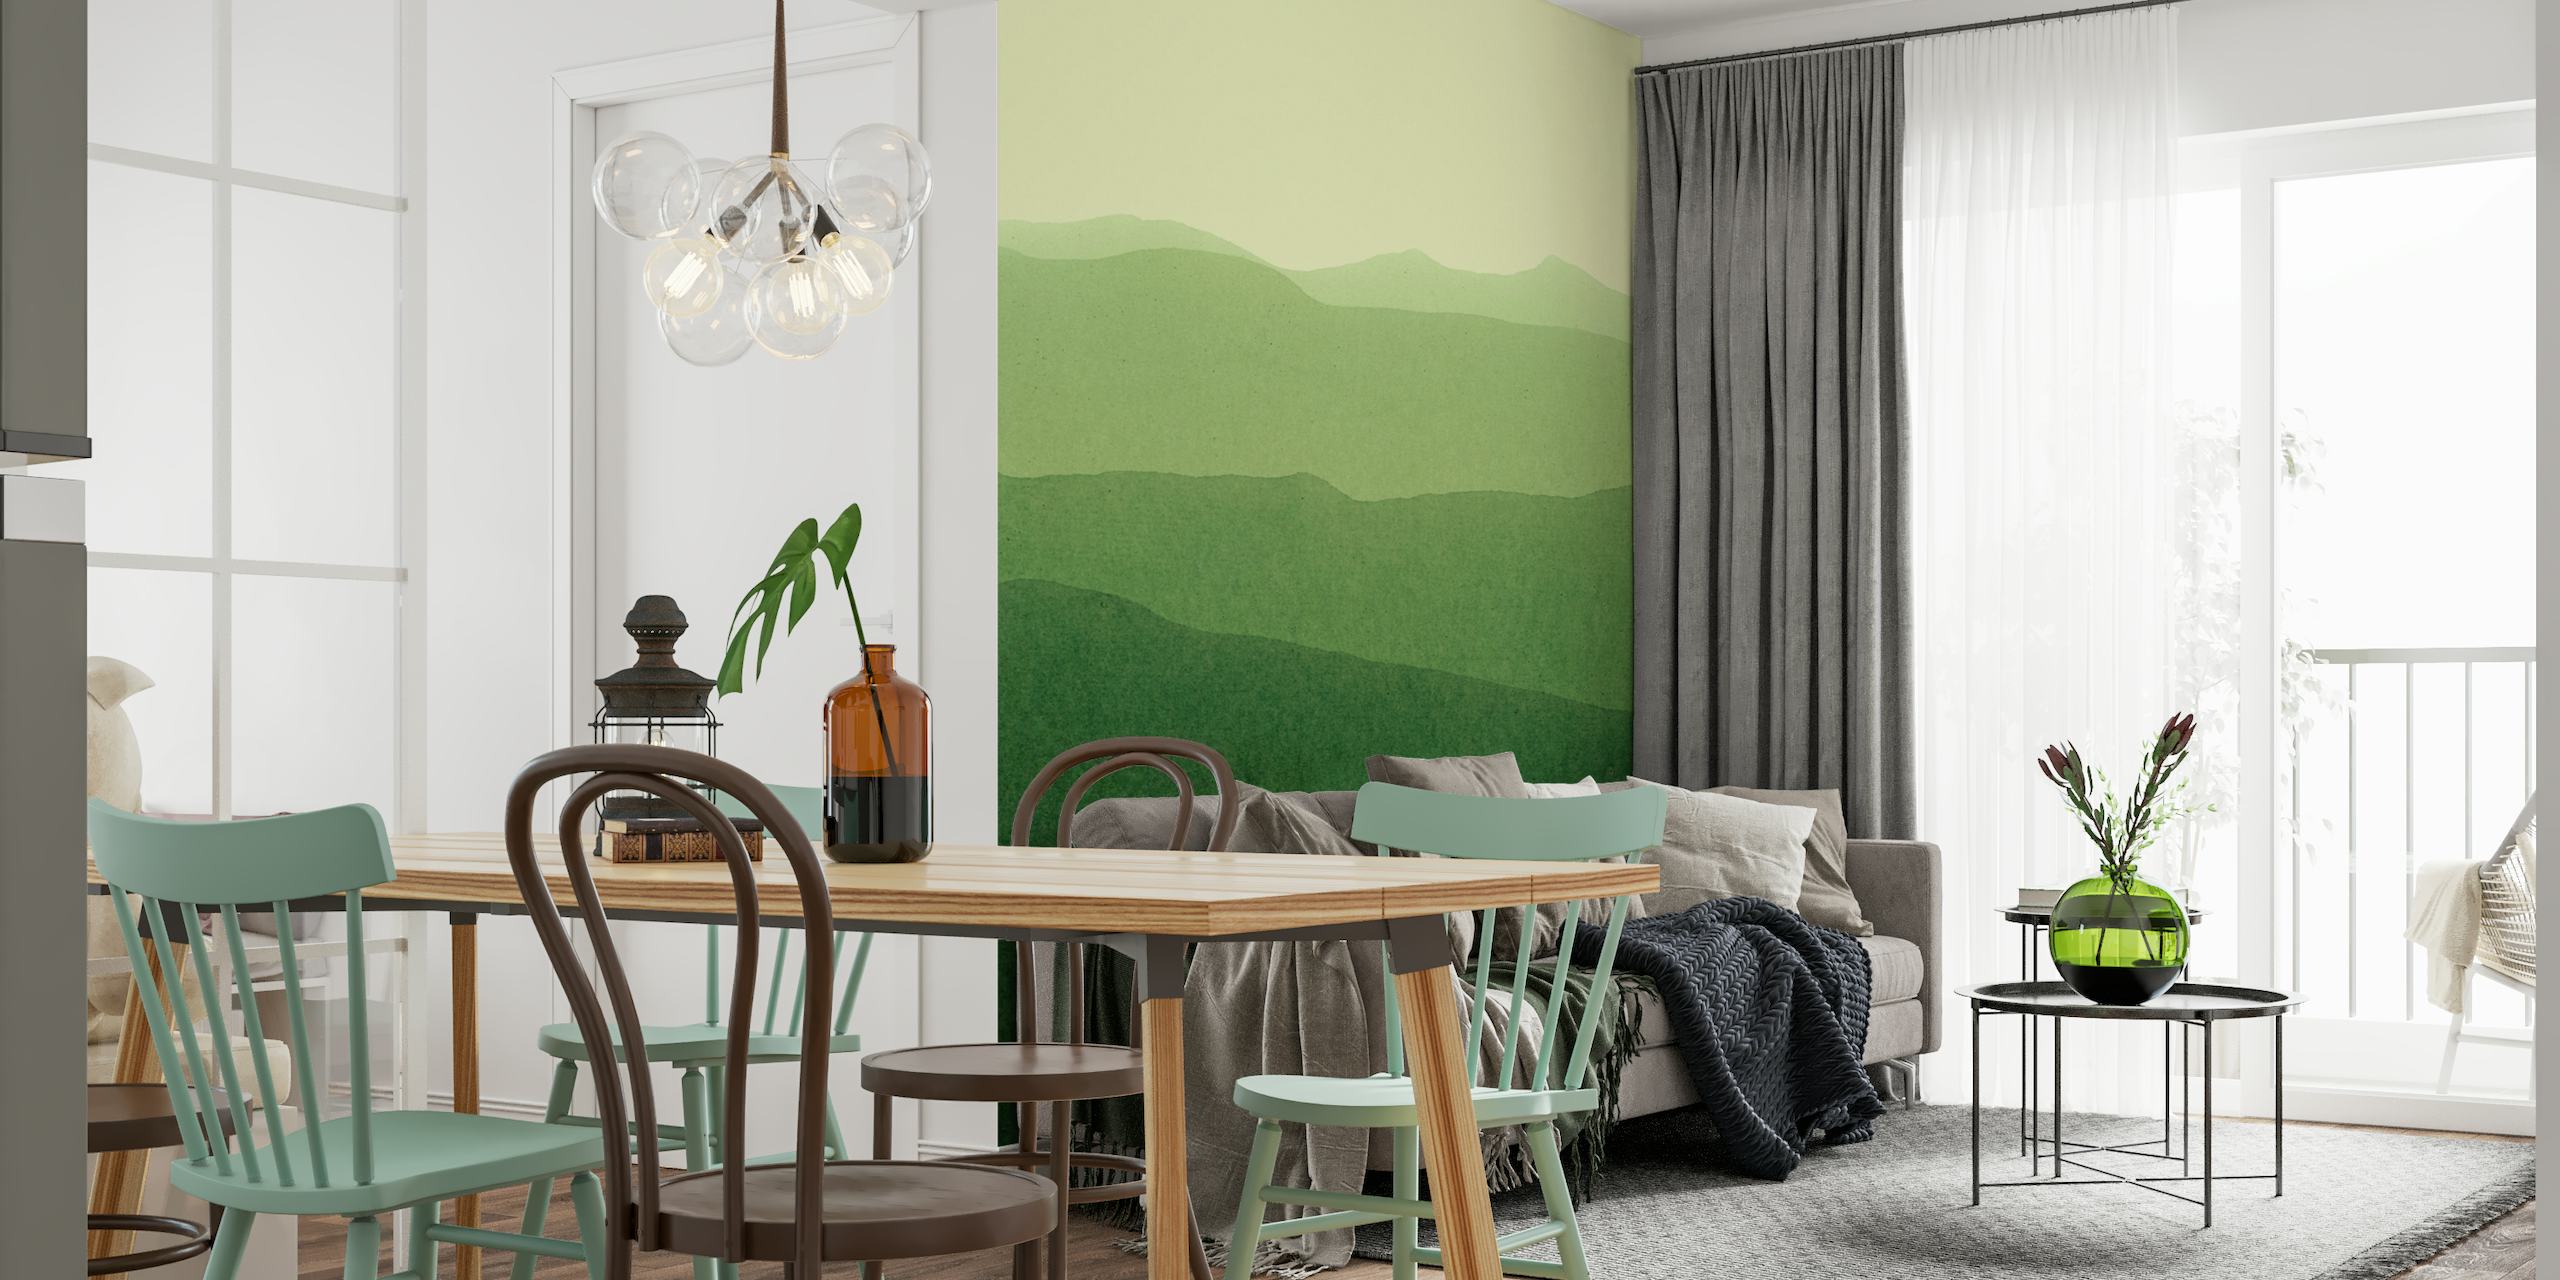 Stilisiertes Landschaftswandgemälde mit grünem Farbverlauf, das sanfte Hügel darstellt